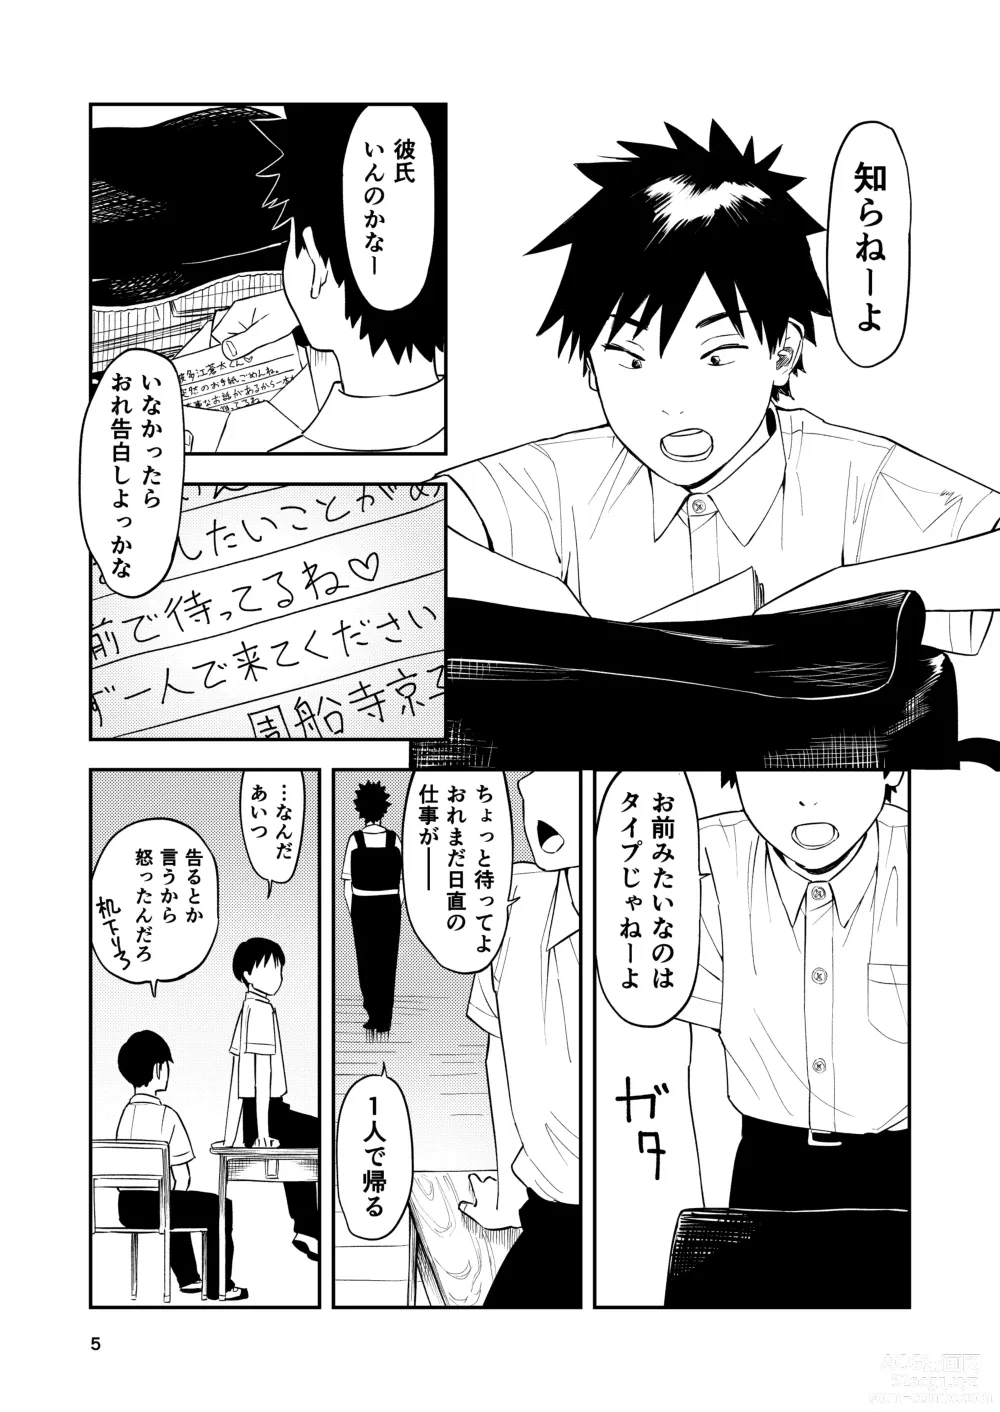 Page 6 of doujinshi Isshou Wasurerarenai Sex